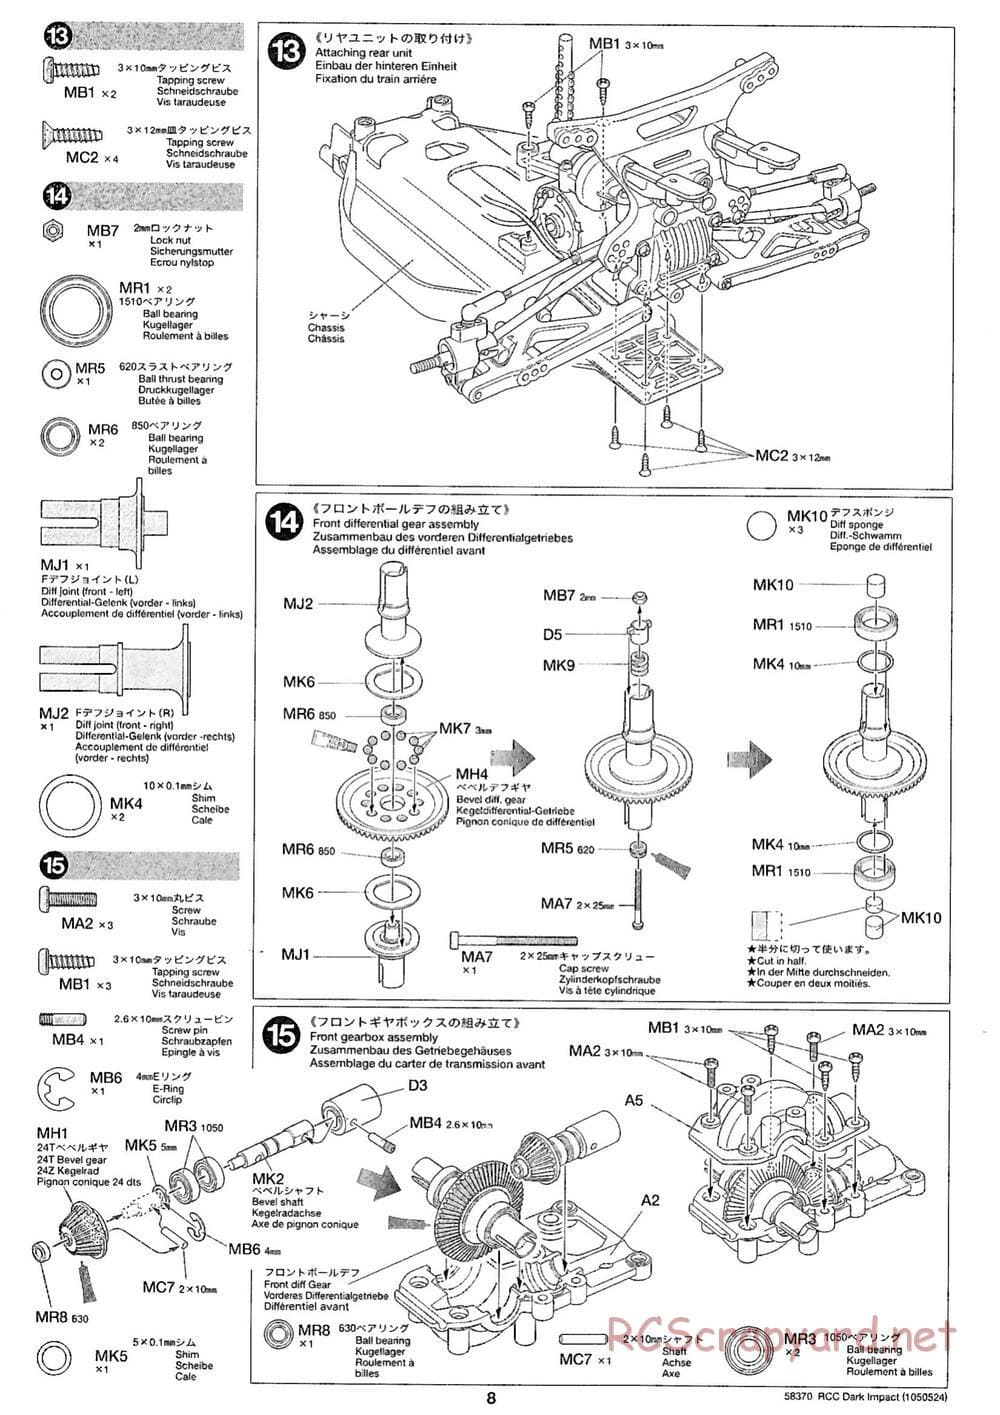 Tamiya - Dark Impact Chassis - Manual - Page 8